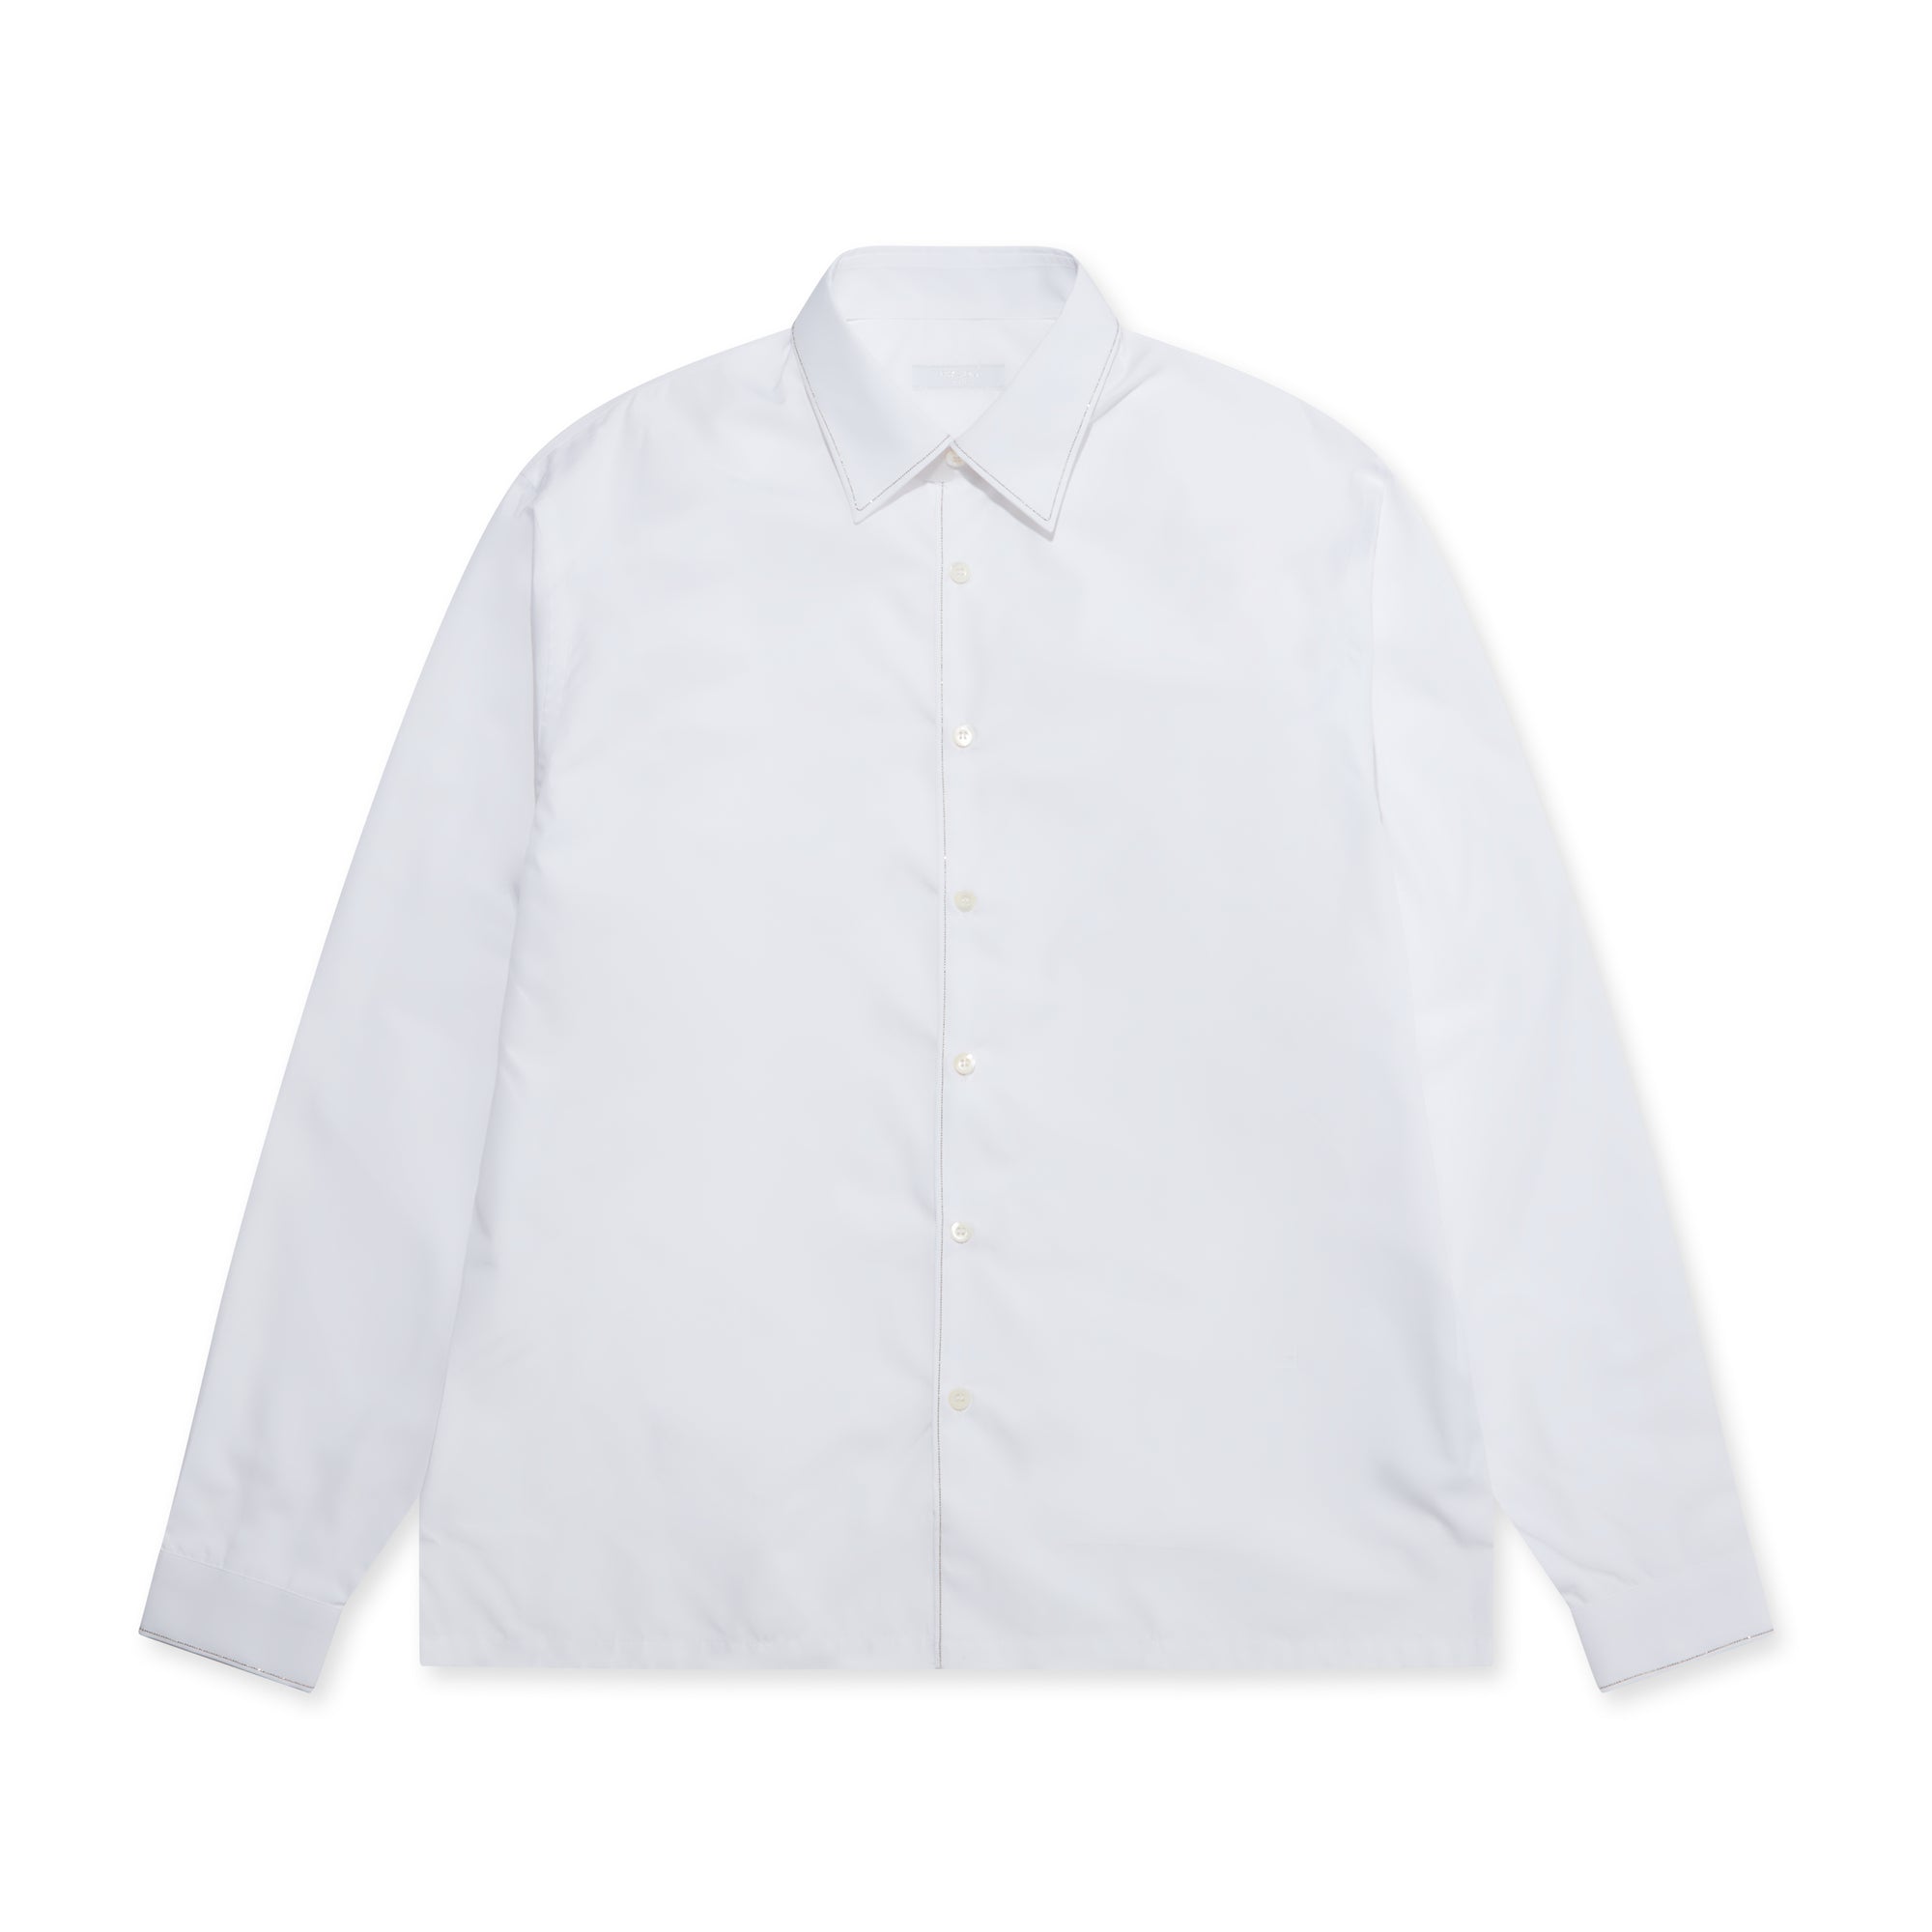 Prada - Men’s Cotton Shirt - (White) view 5